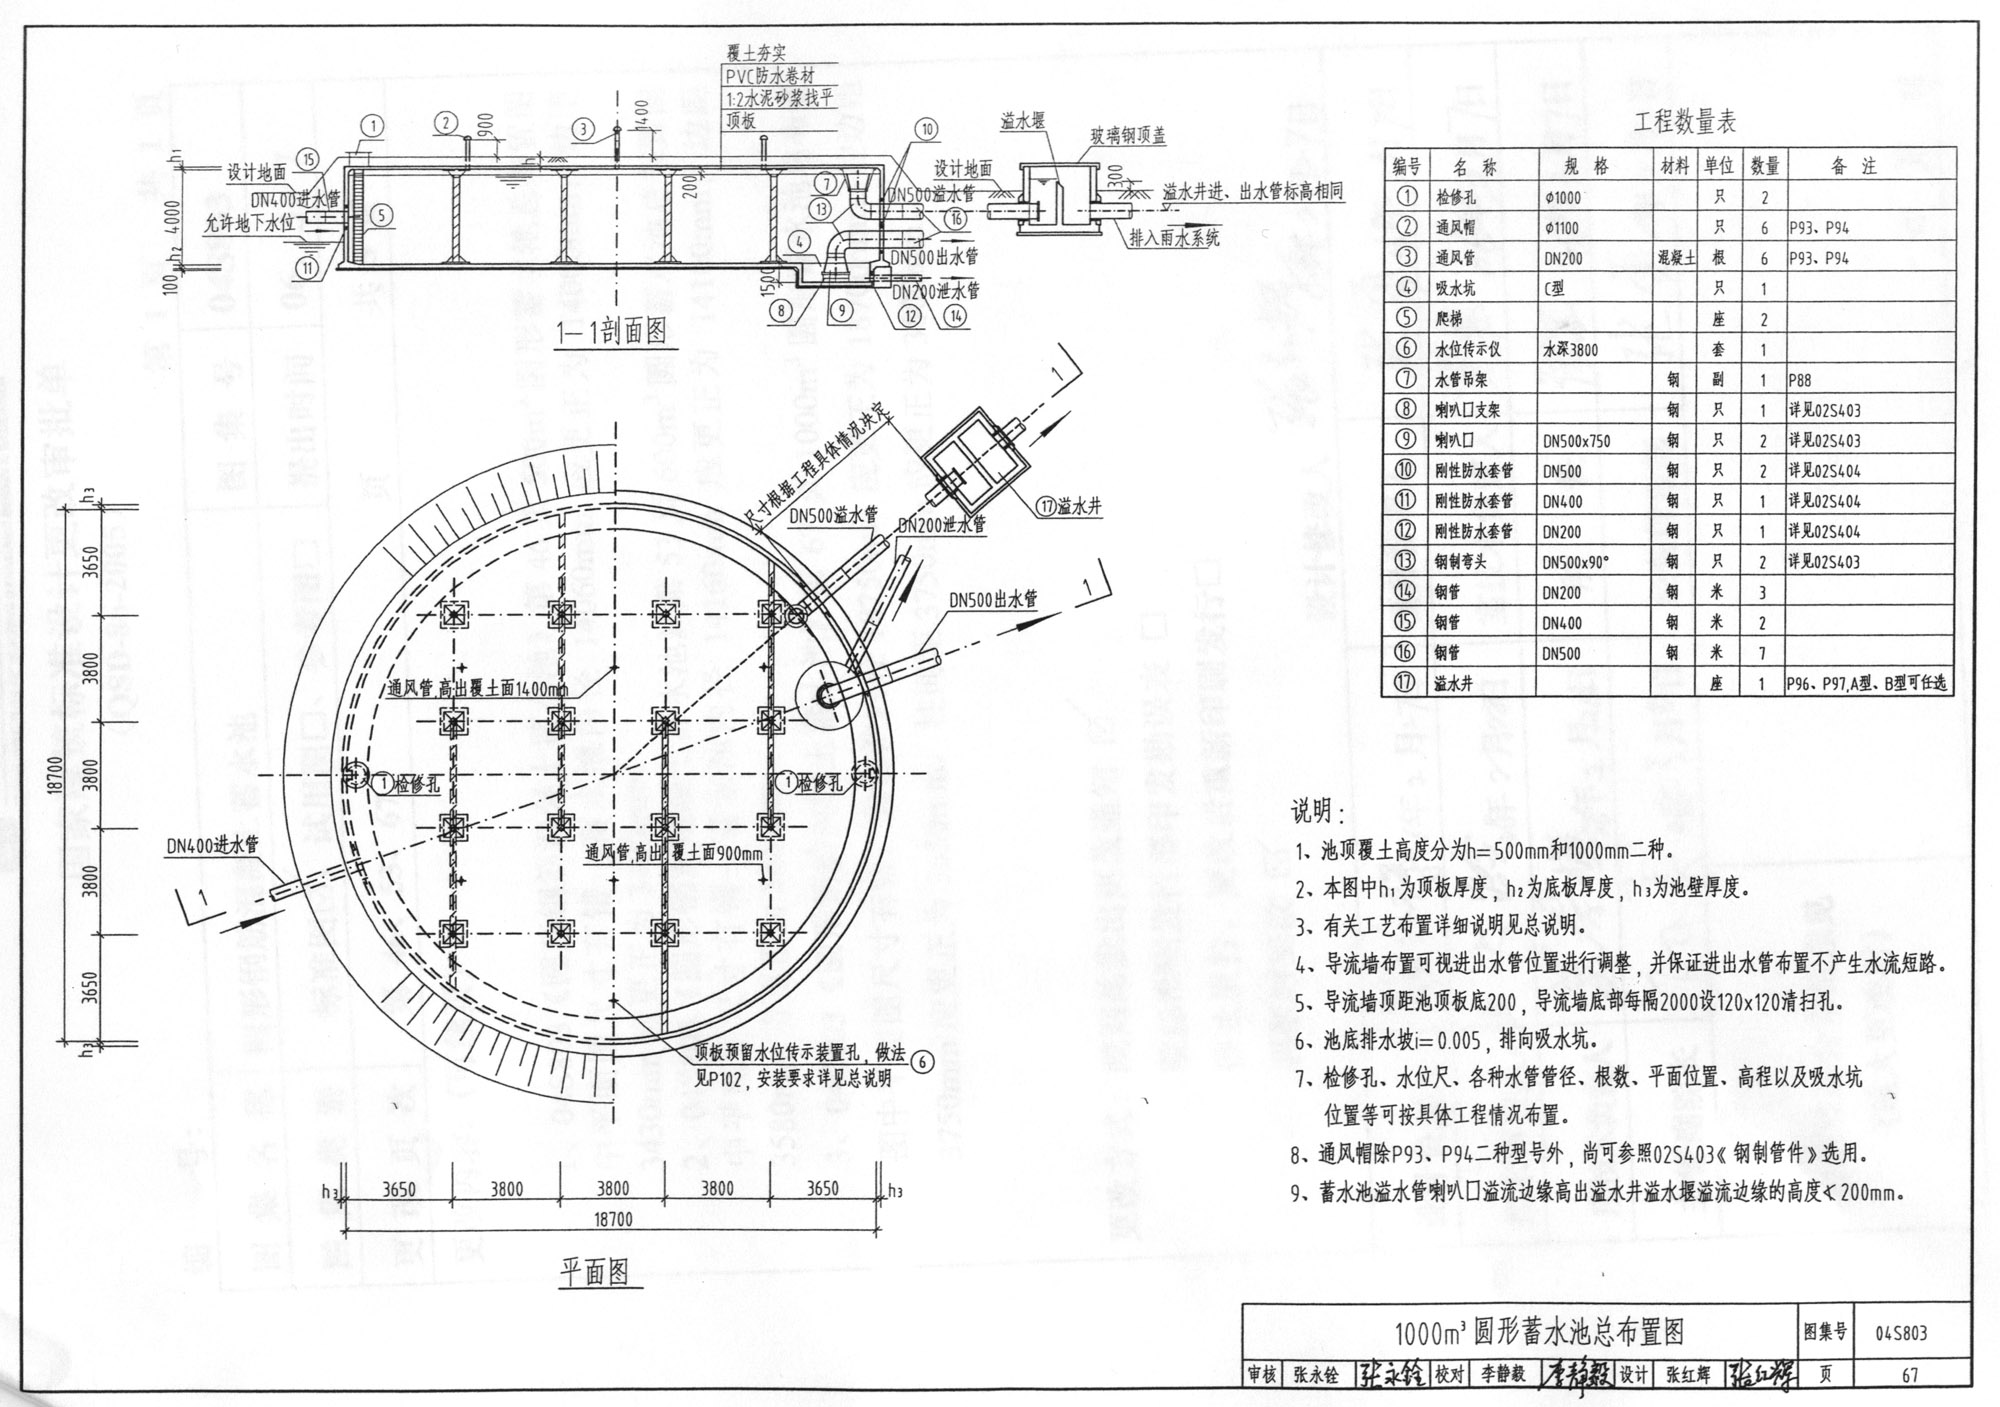 防空地下室结构设计图集07FG04《钢筋混凝土门框墙》更正说明-中国建筑标准设计网